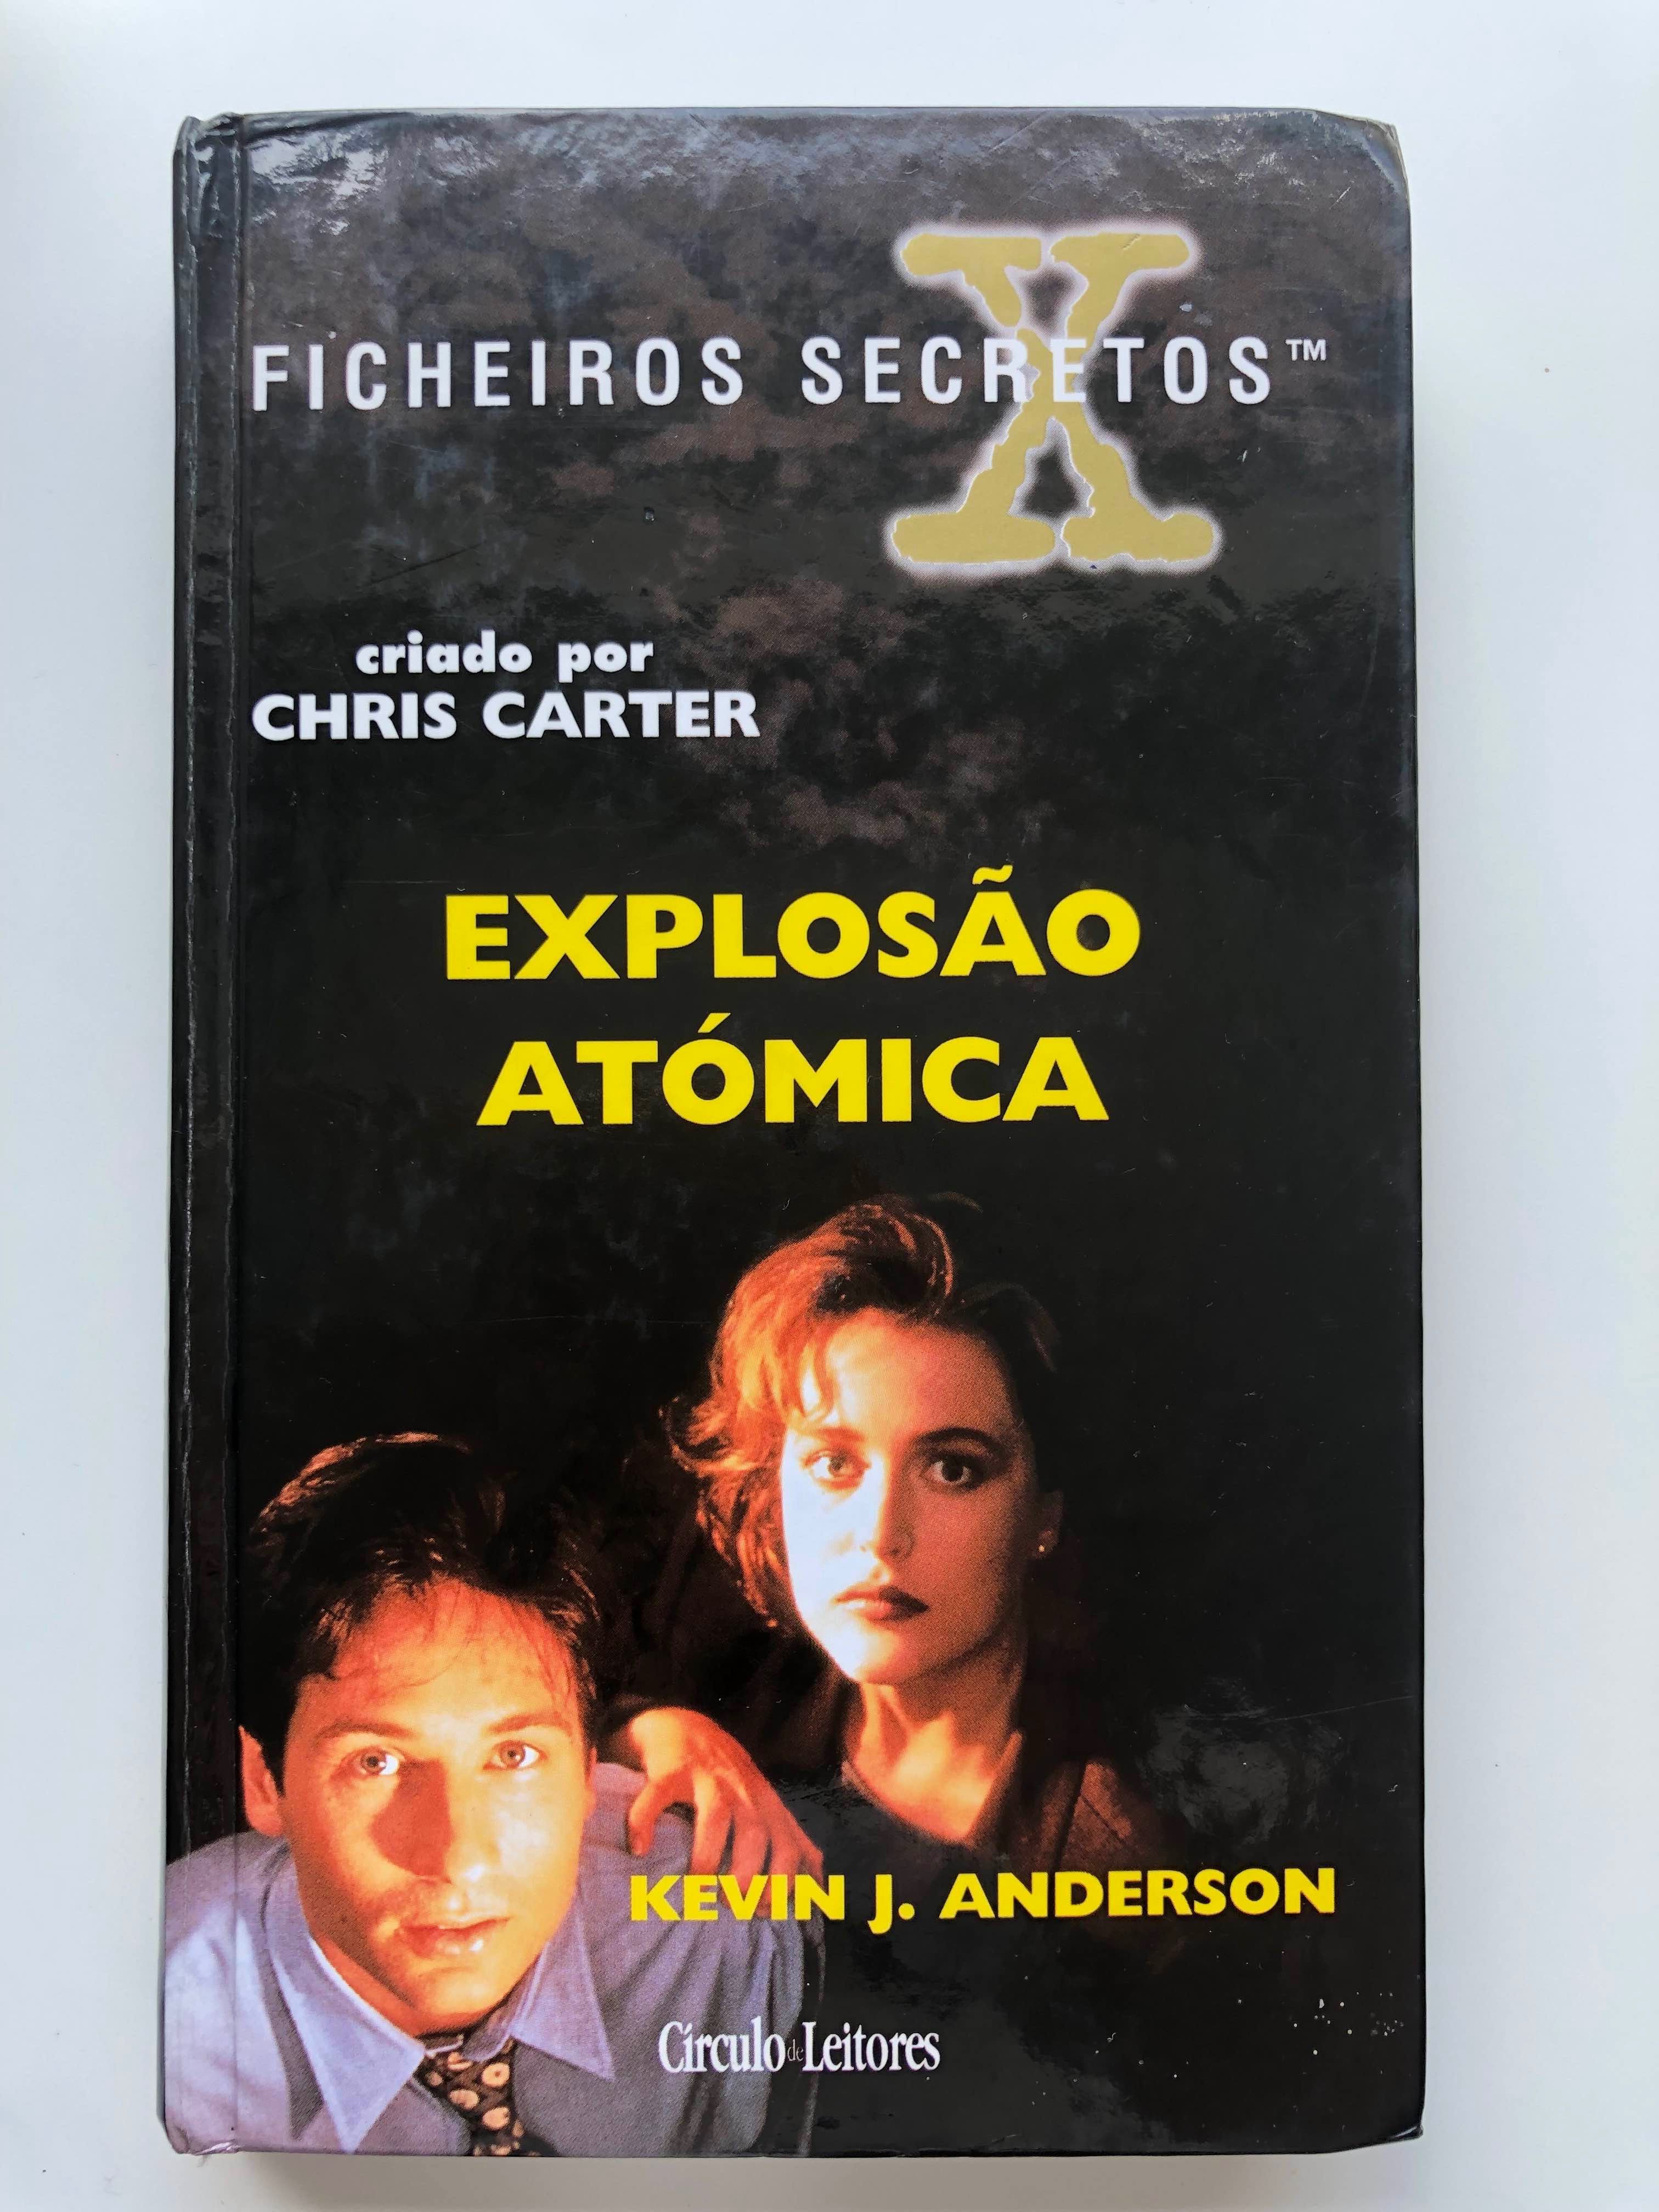 Ficheiros Secretos: "Explosão Atómica" + "Ruínas" (Portes Incluídos)